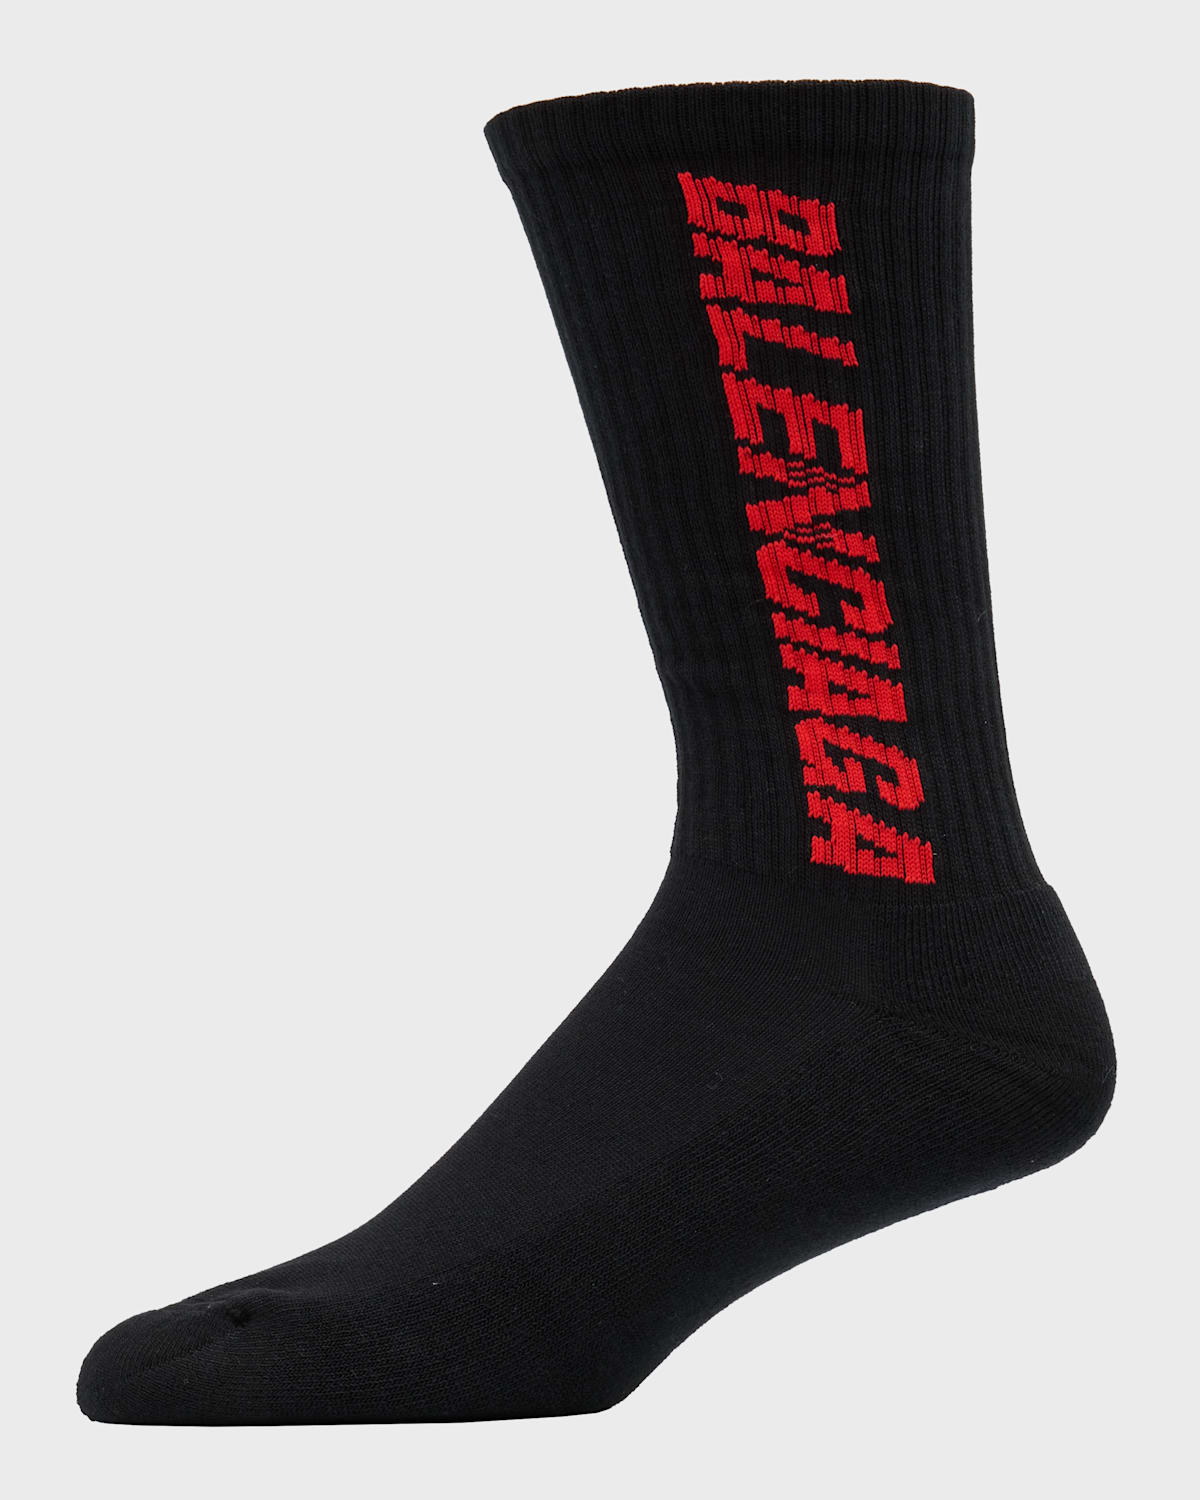 Men's Racer Socks